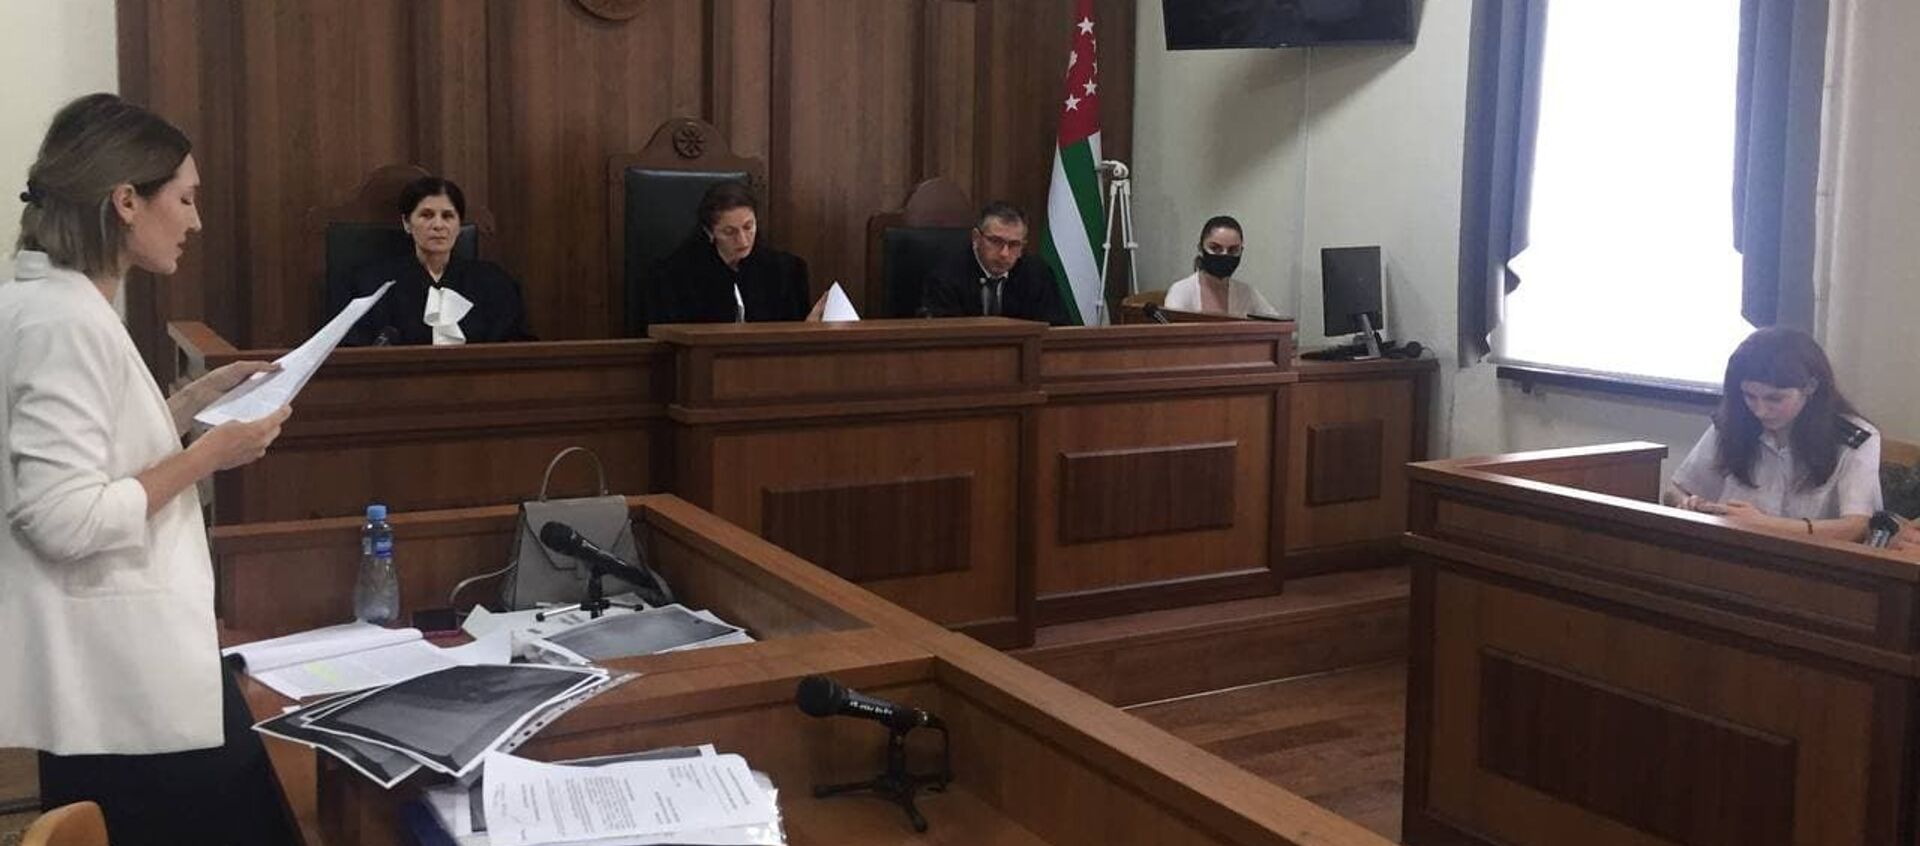 Кассационная коллегия Верховного суда Абхазии рассматривает жалобу на решение Сухумского городского суда  - Sputnik Абхазия, 1920, 09.07.2021